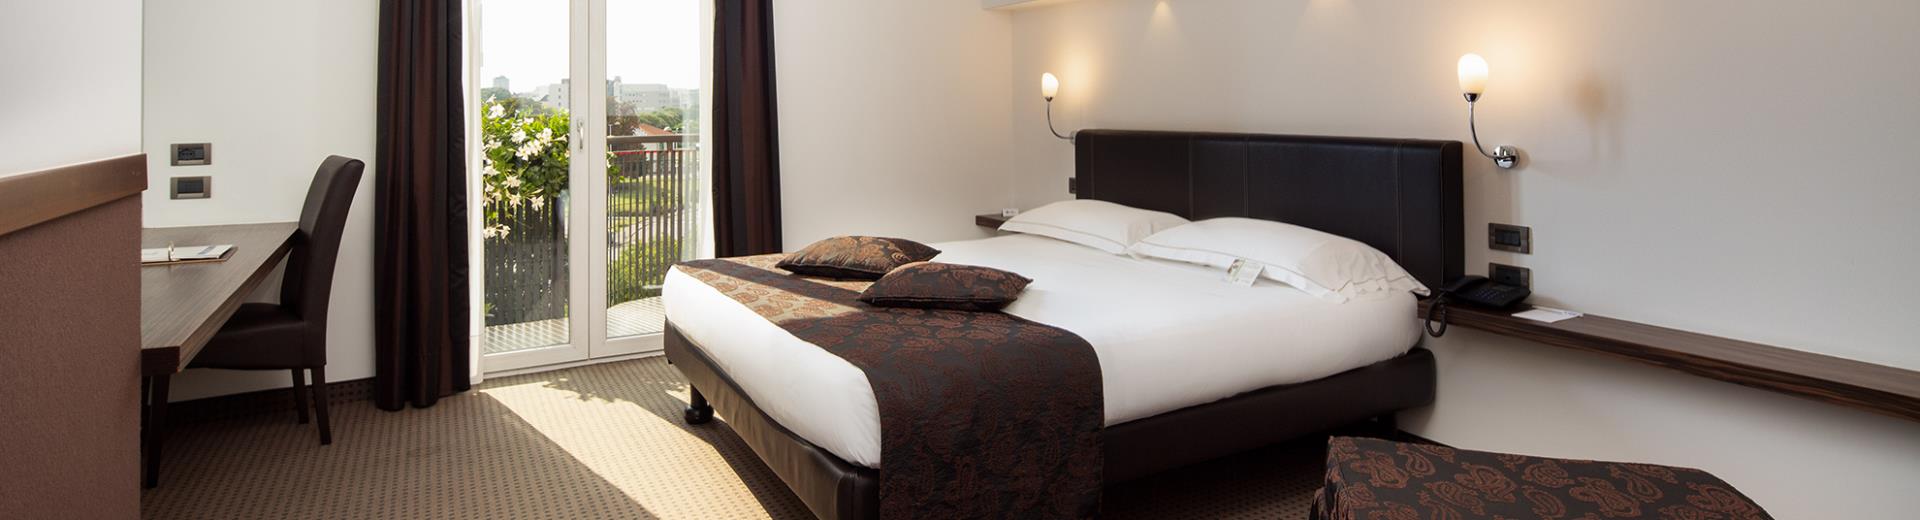 Goditi tutto il comfort delle nostre camere Doppie Superior: prenota subito Hotel Biri, moderno 4 stelle a Padova!